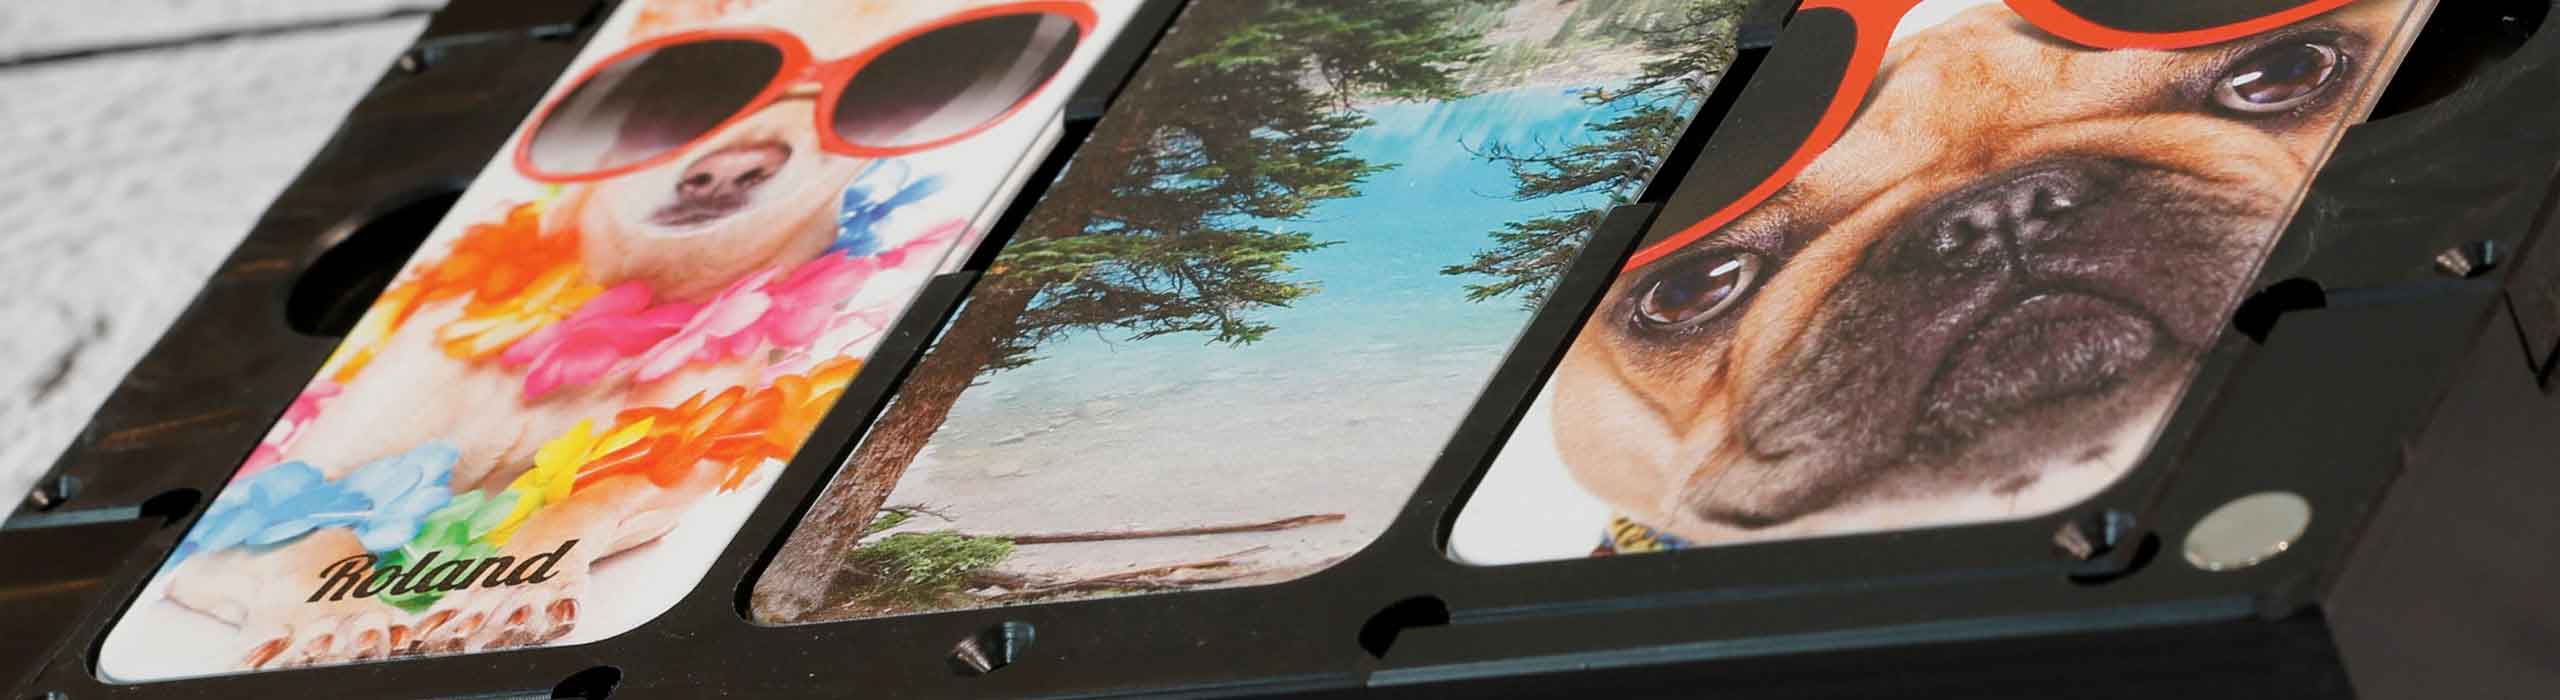 Handy-Positionierungsvorrichtung für UV-LEF-Drucker und 4 Hüllen mit Hunden in Sonnenbrille sowie Strandmotive